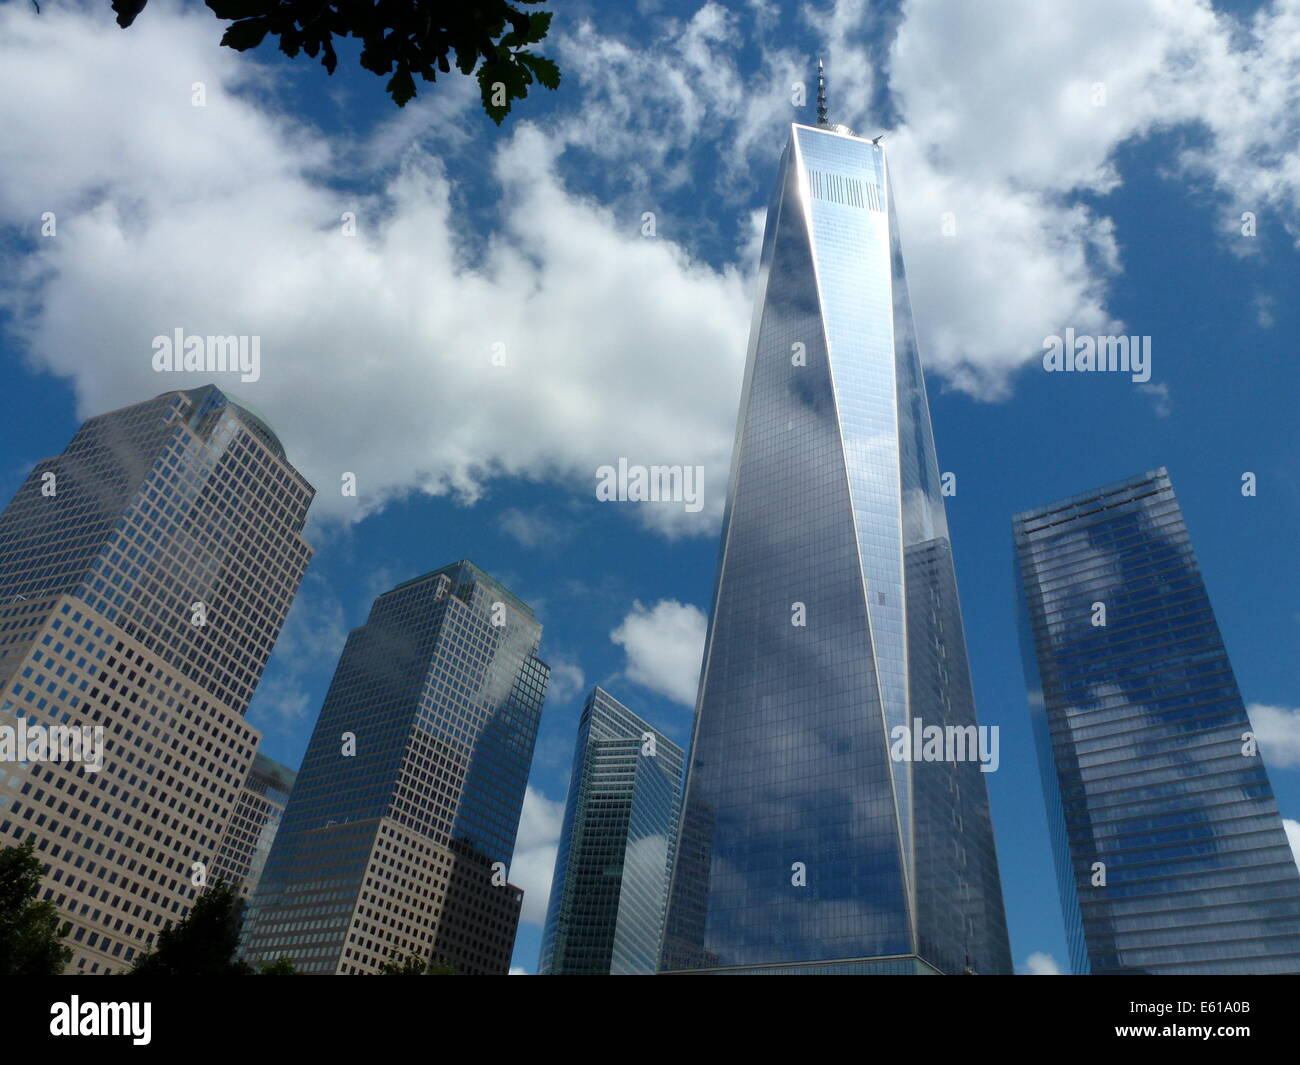 Wolken-Spiegel an der Fassade des One World Trade Center (WTC 1) Büro-Hochhaus, früher bekannt als der Freedom Tower befindet sich angrenzend zu der World Financial Center (WFC) (L) in New York City, USA, 20. Juni 2014. Auf der Website auch bekannt als Ground Zero, das sah die Zerstörung des World Trade Center in den Terroranschlag am 11. September 2001, wurde das WTC 1 Hochhaus gebaut. Das Gebäude, das seit 2006 im Bau gewesen ist das höchste Hochhaus in den Vereinigten Staaten, 541,3 Meter. Foto: Alexandra Schuler/Dpa - Nr. Drähte SERVICE- Stockfoto